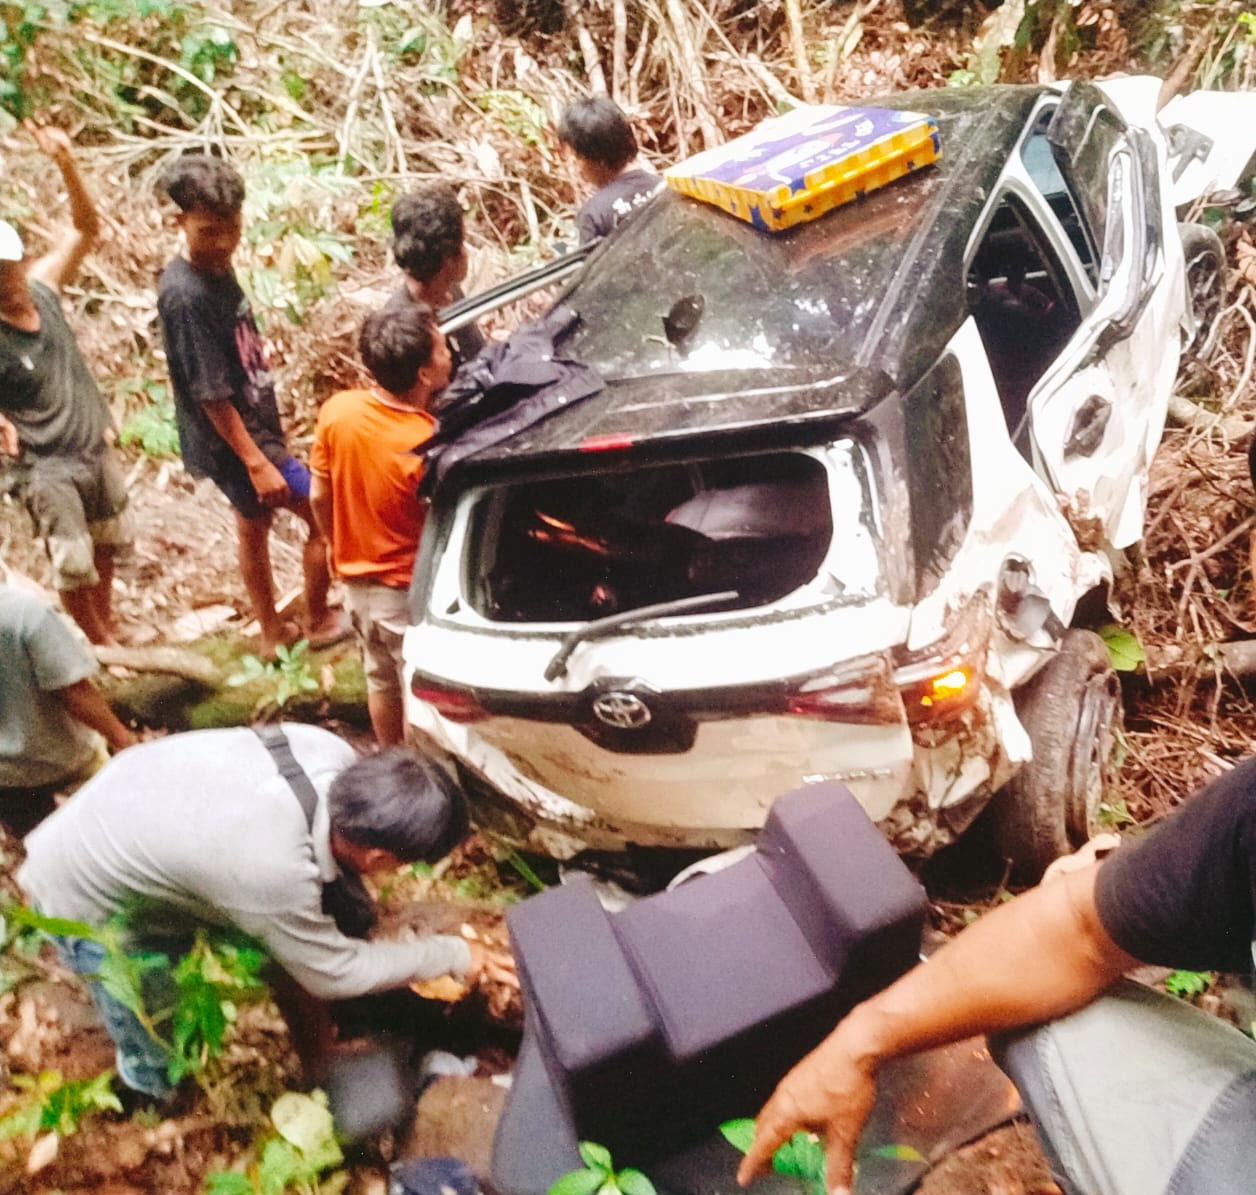 Pemudik Kecelakaan di Jalinbar, Satu Keluarga Terjun ke Jurang Tebing Batu, Bocah 10 Bulan Meninggal Dunia